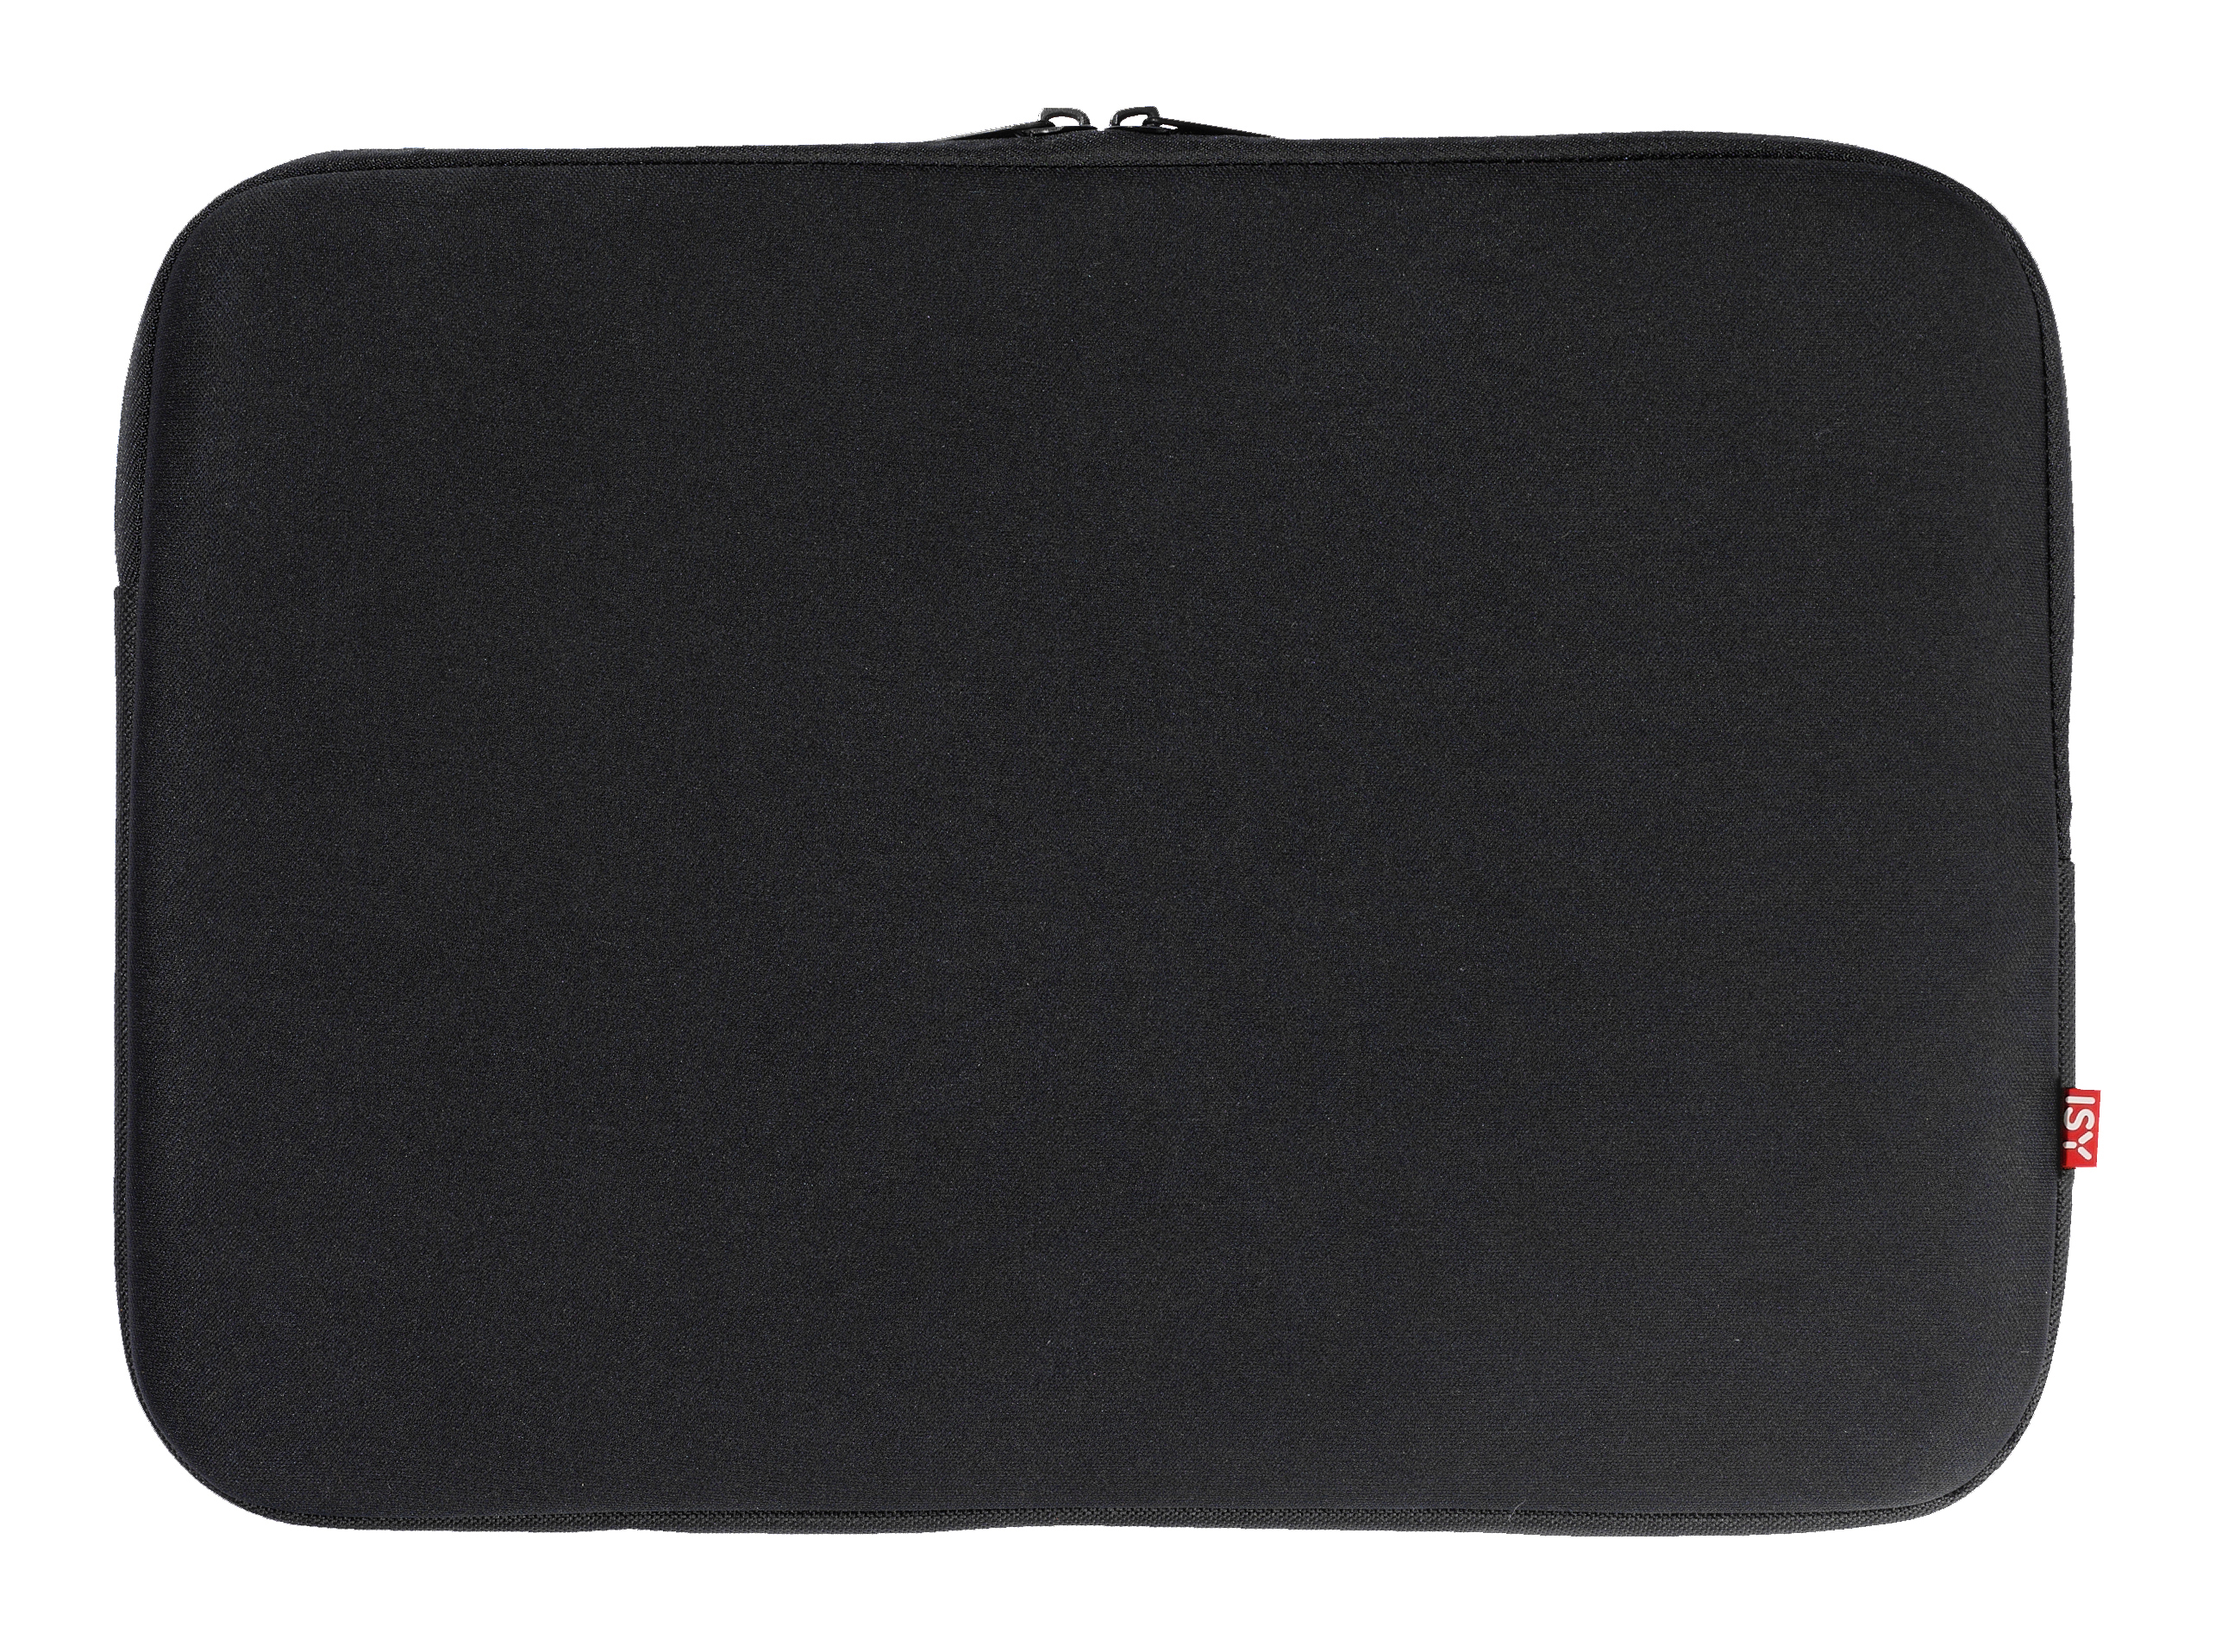 ISY Multispandex mit INB-750-1 Notebooktasche Sleeve Universal für Schwarz Schaumstoff,